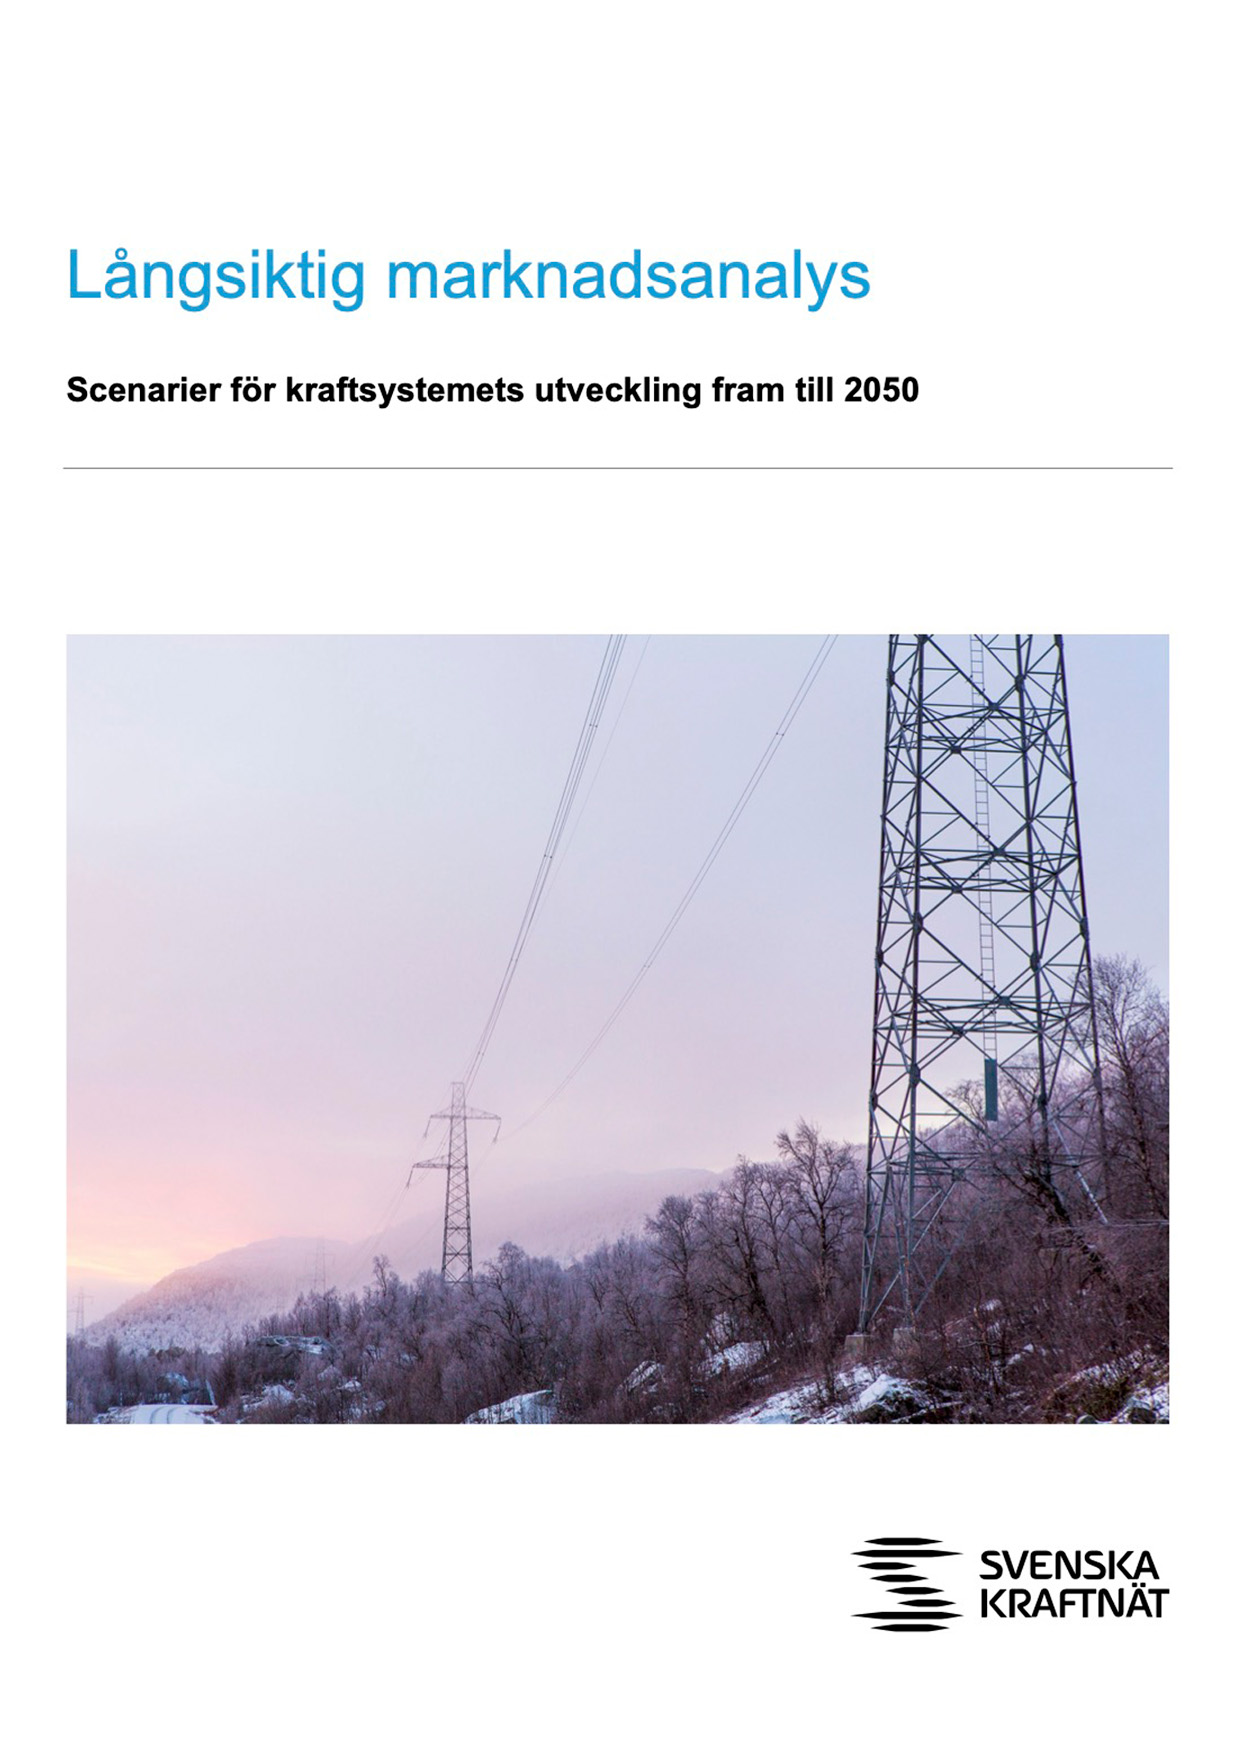 Framsida Långsiktig marknadsanalys med bild på kraftledning och kraftledningsstolpar i vinterlandskap